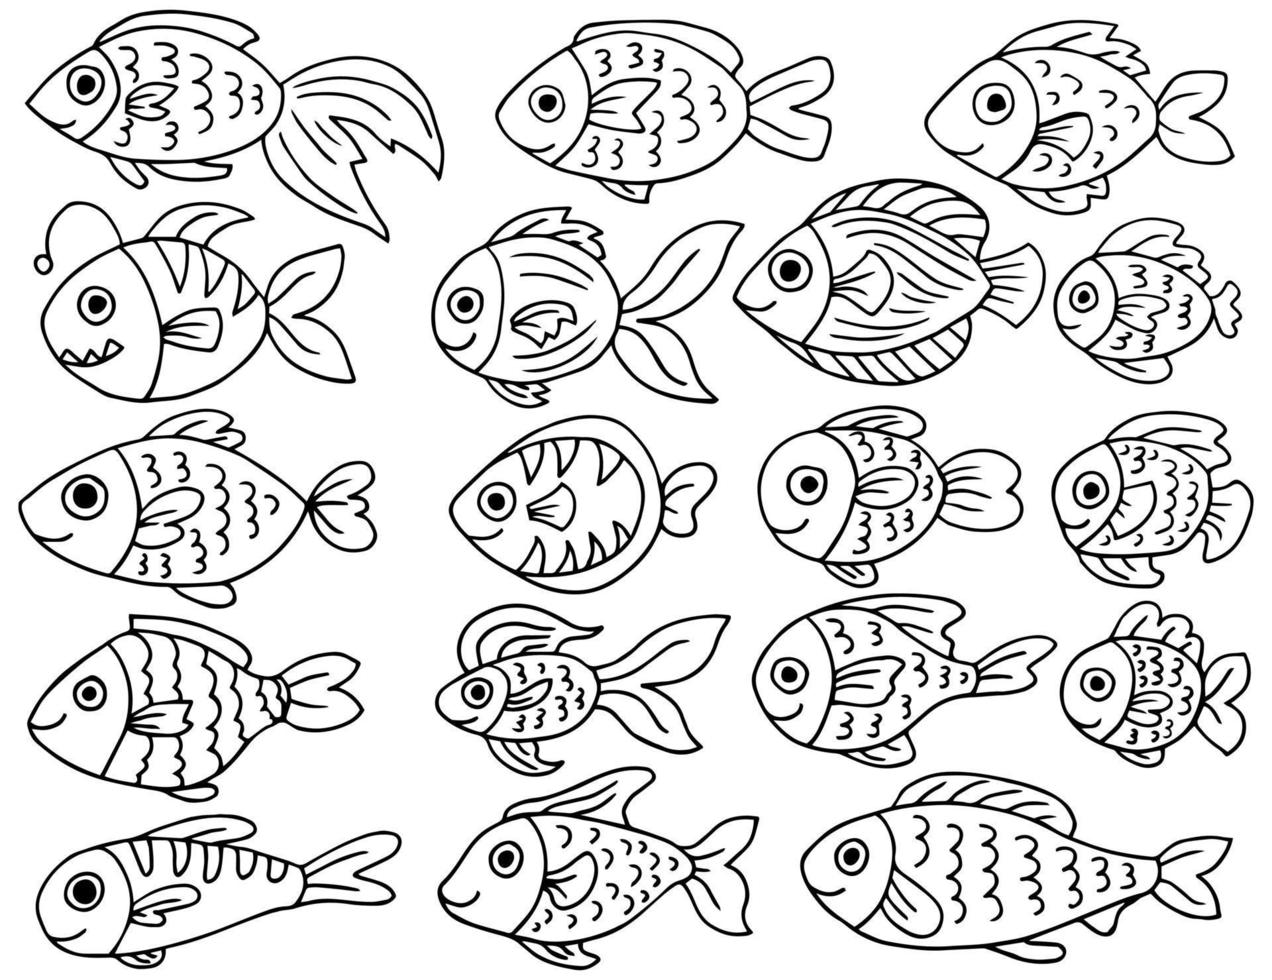 unter Wasser Welt Meer Leben Ozean Fisch Symbol Satz. Fisch skizzieren Sammlung. Hand gezeichnet Vektor Illustration.